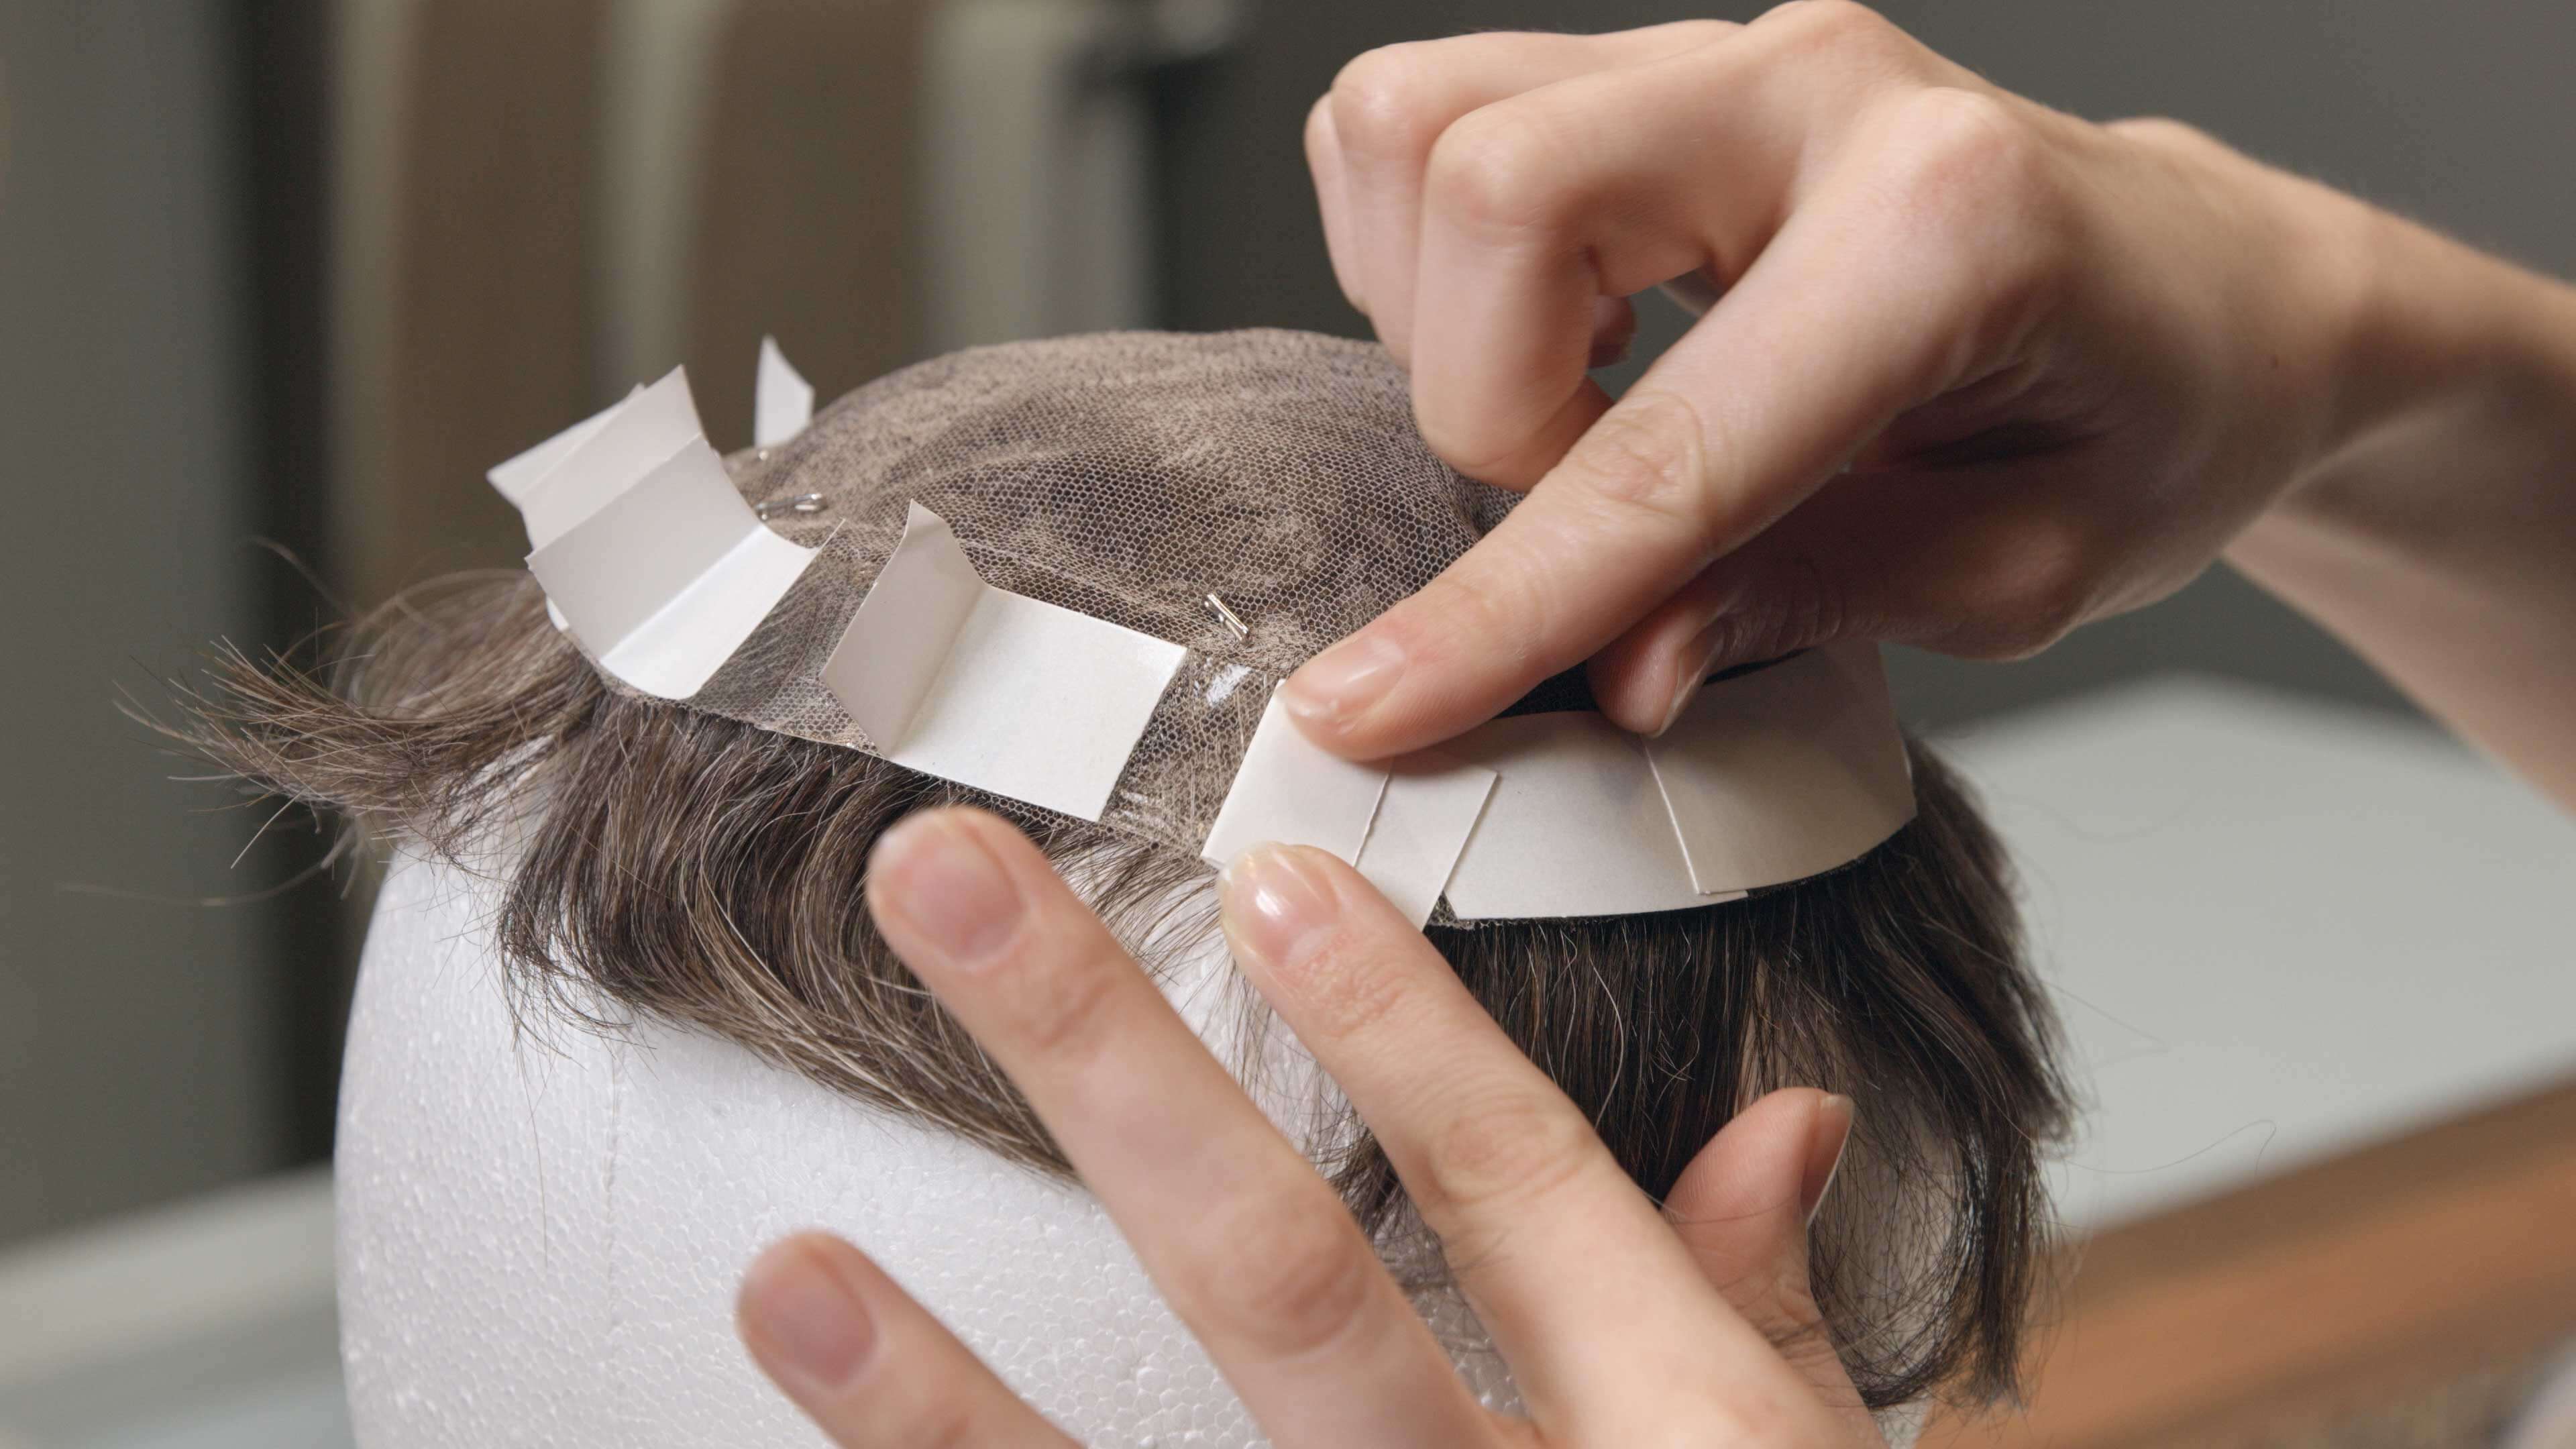 Protez Saç Uygulaması 5. Adım | Protez Saç Nasıl Bantlanır?